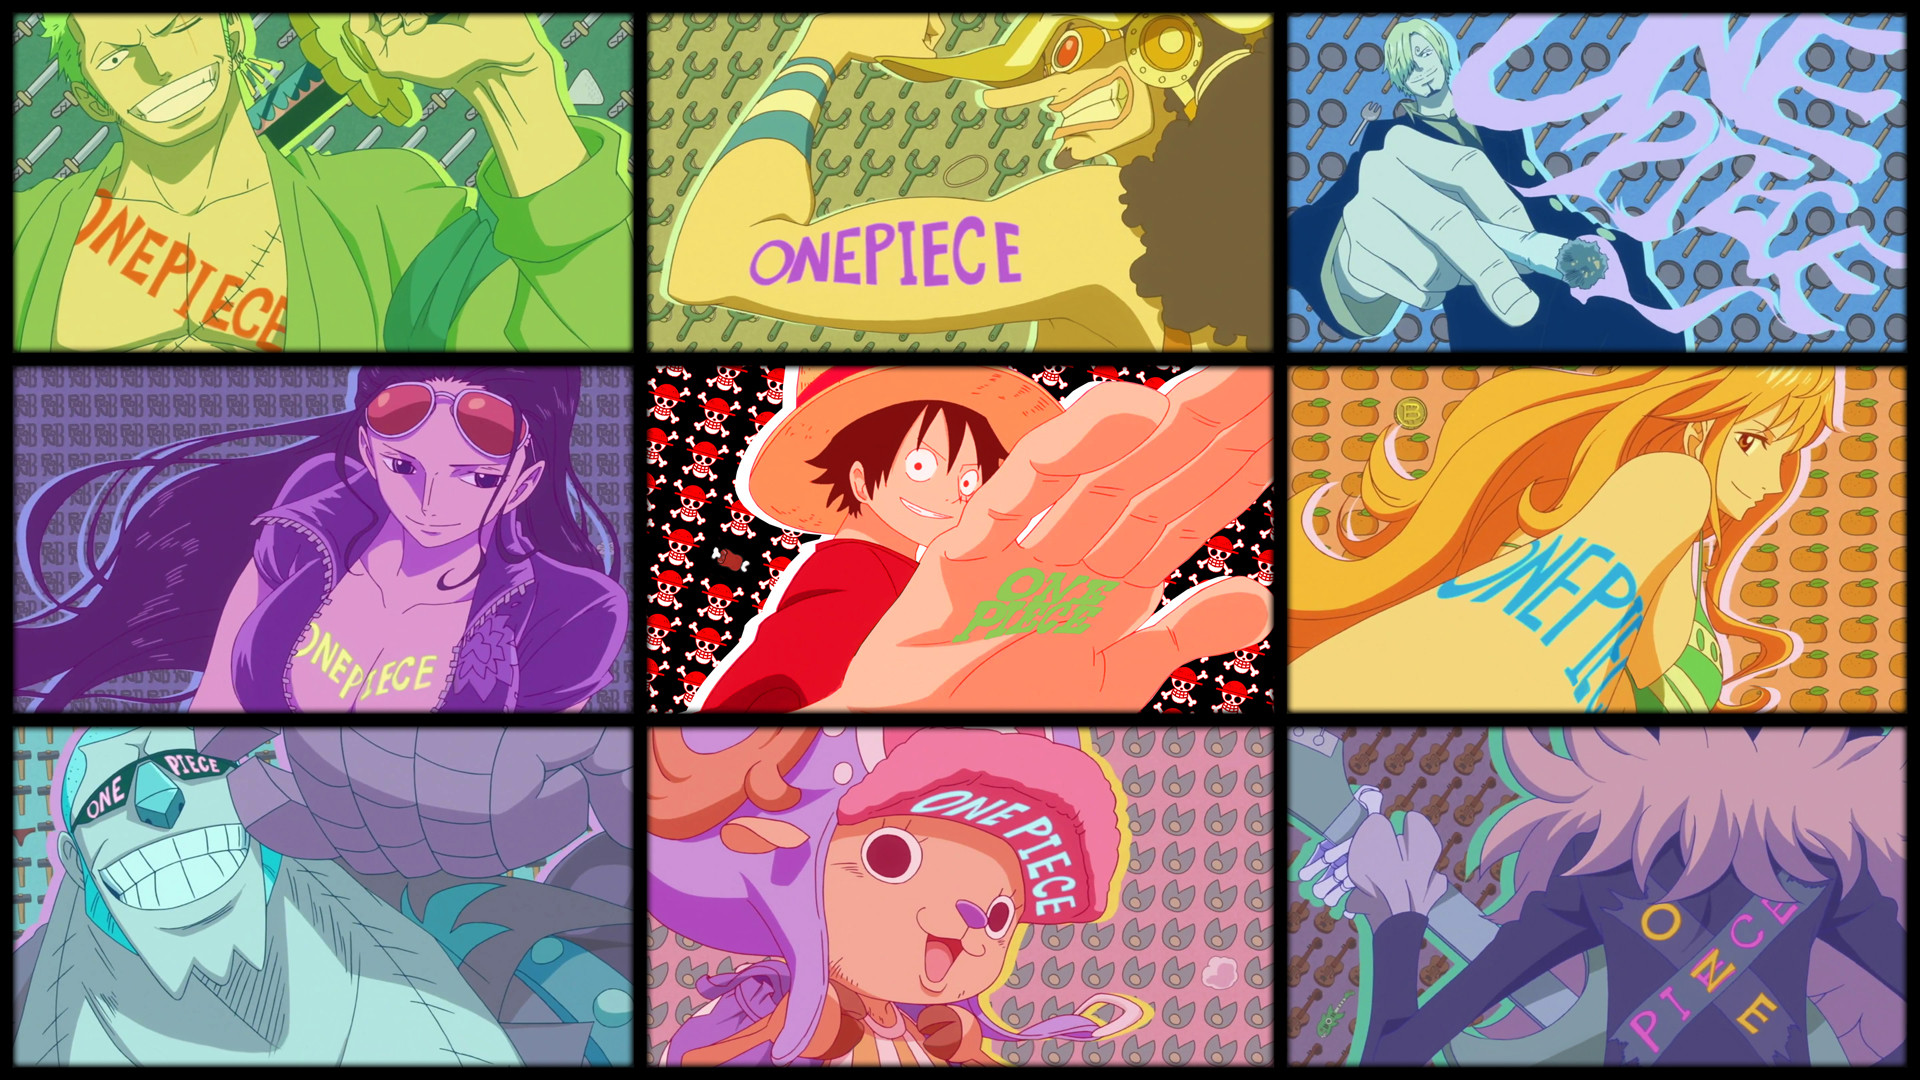 Bạn là fan của bộ anime One Piece? Hãy đến với One Piece Wallpapers để tải những hình nền đẹp mắt và sắc nét nhất, từ các nhân vật yêu thích như Luffy, Zoro, Sanji và nhiều hơn nữa!